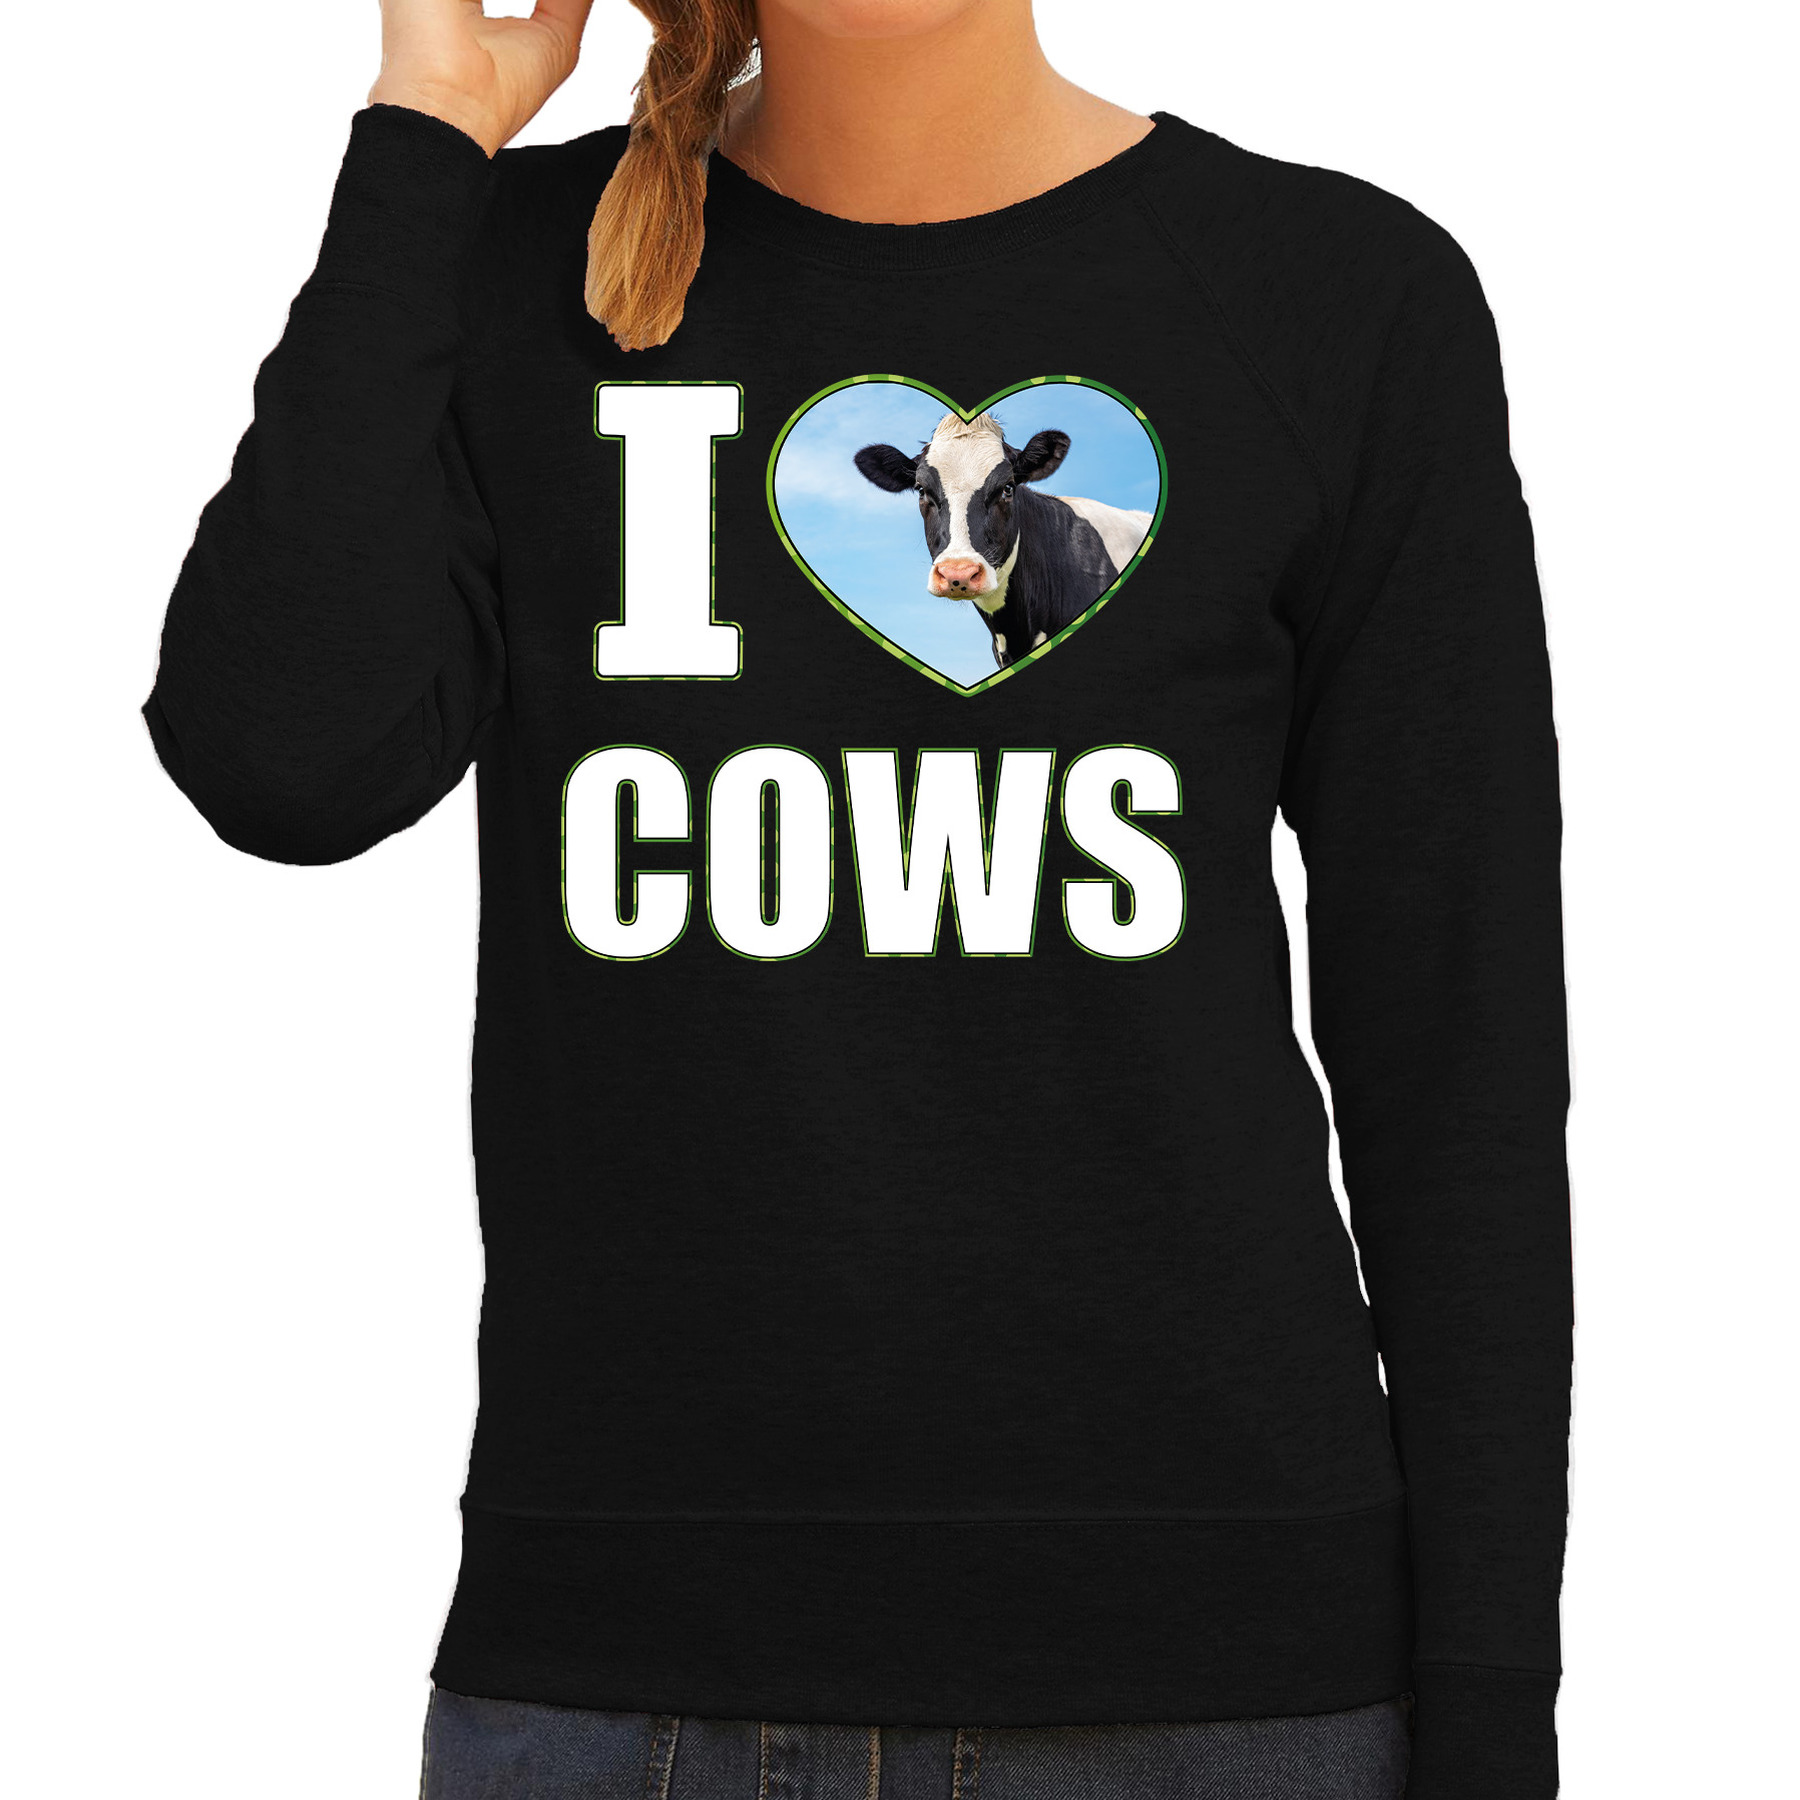 I love cows sweater / trui met dieren foto van een koe zwart voor dames